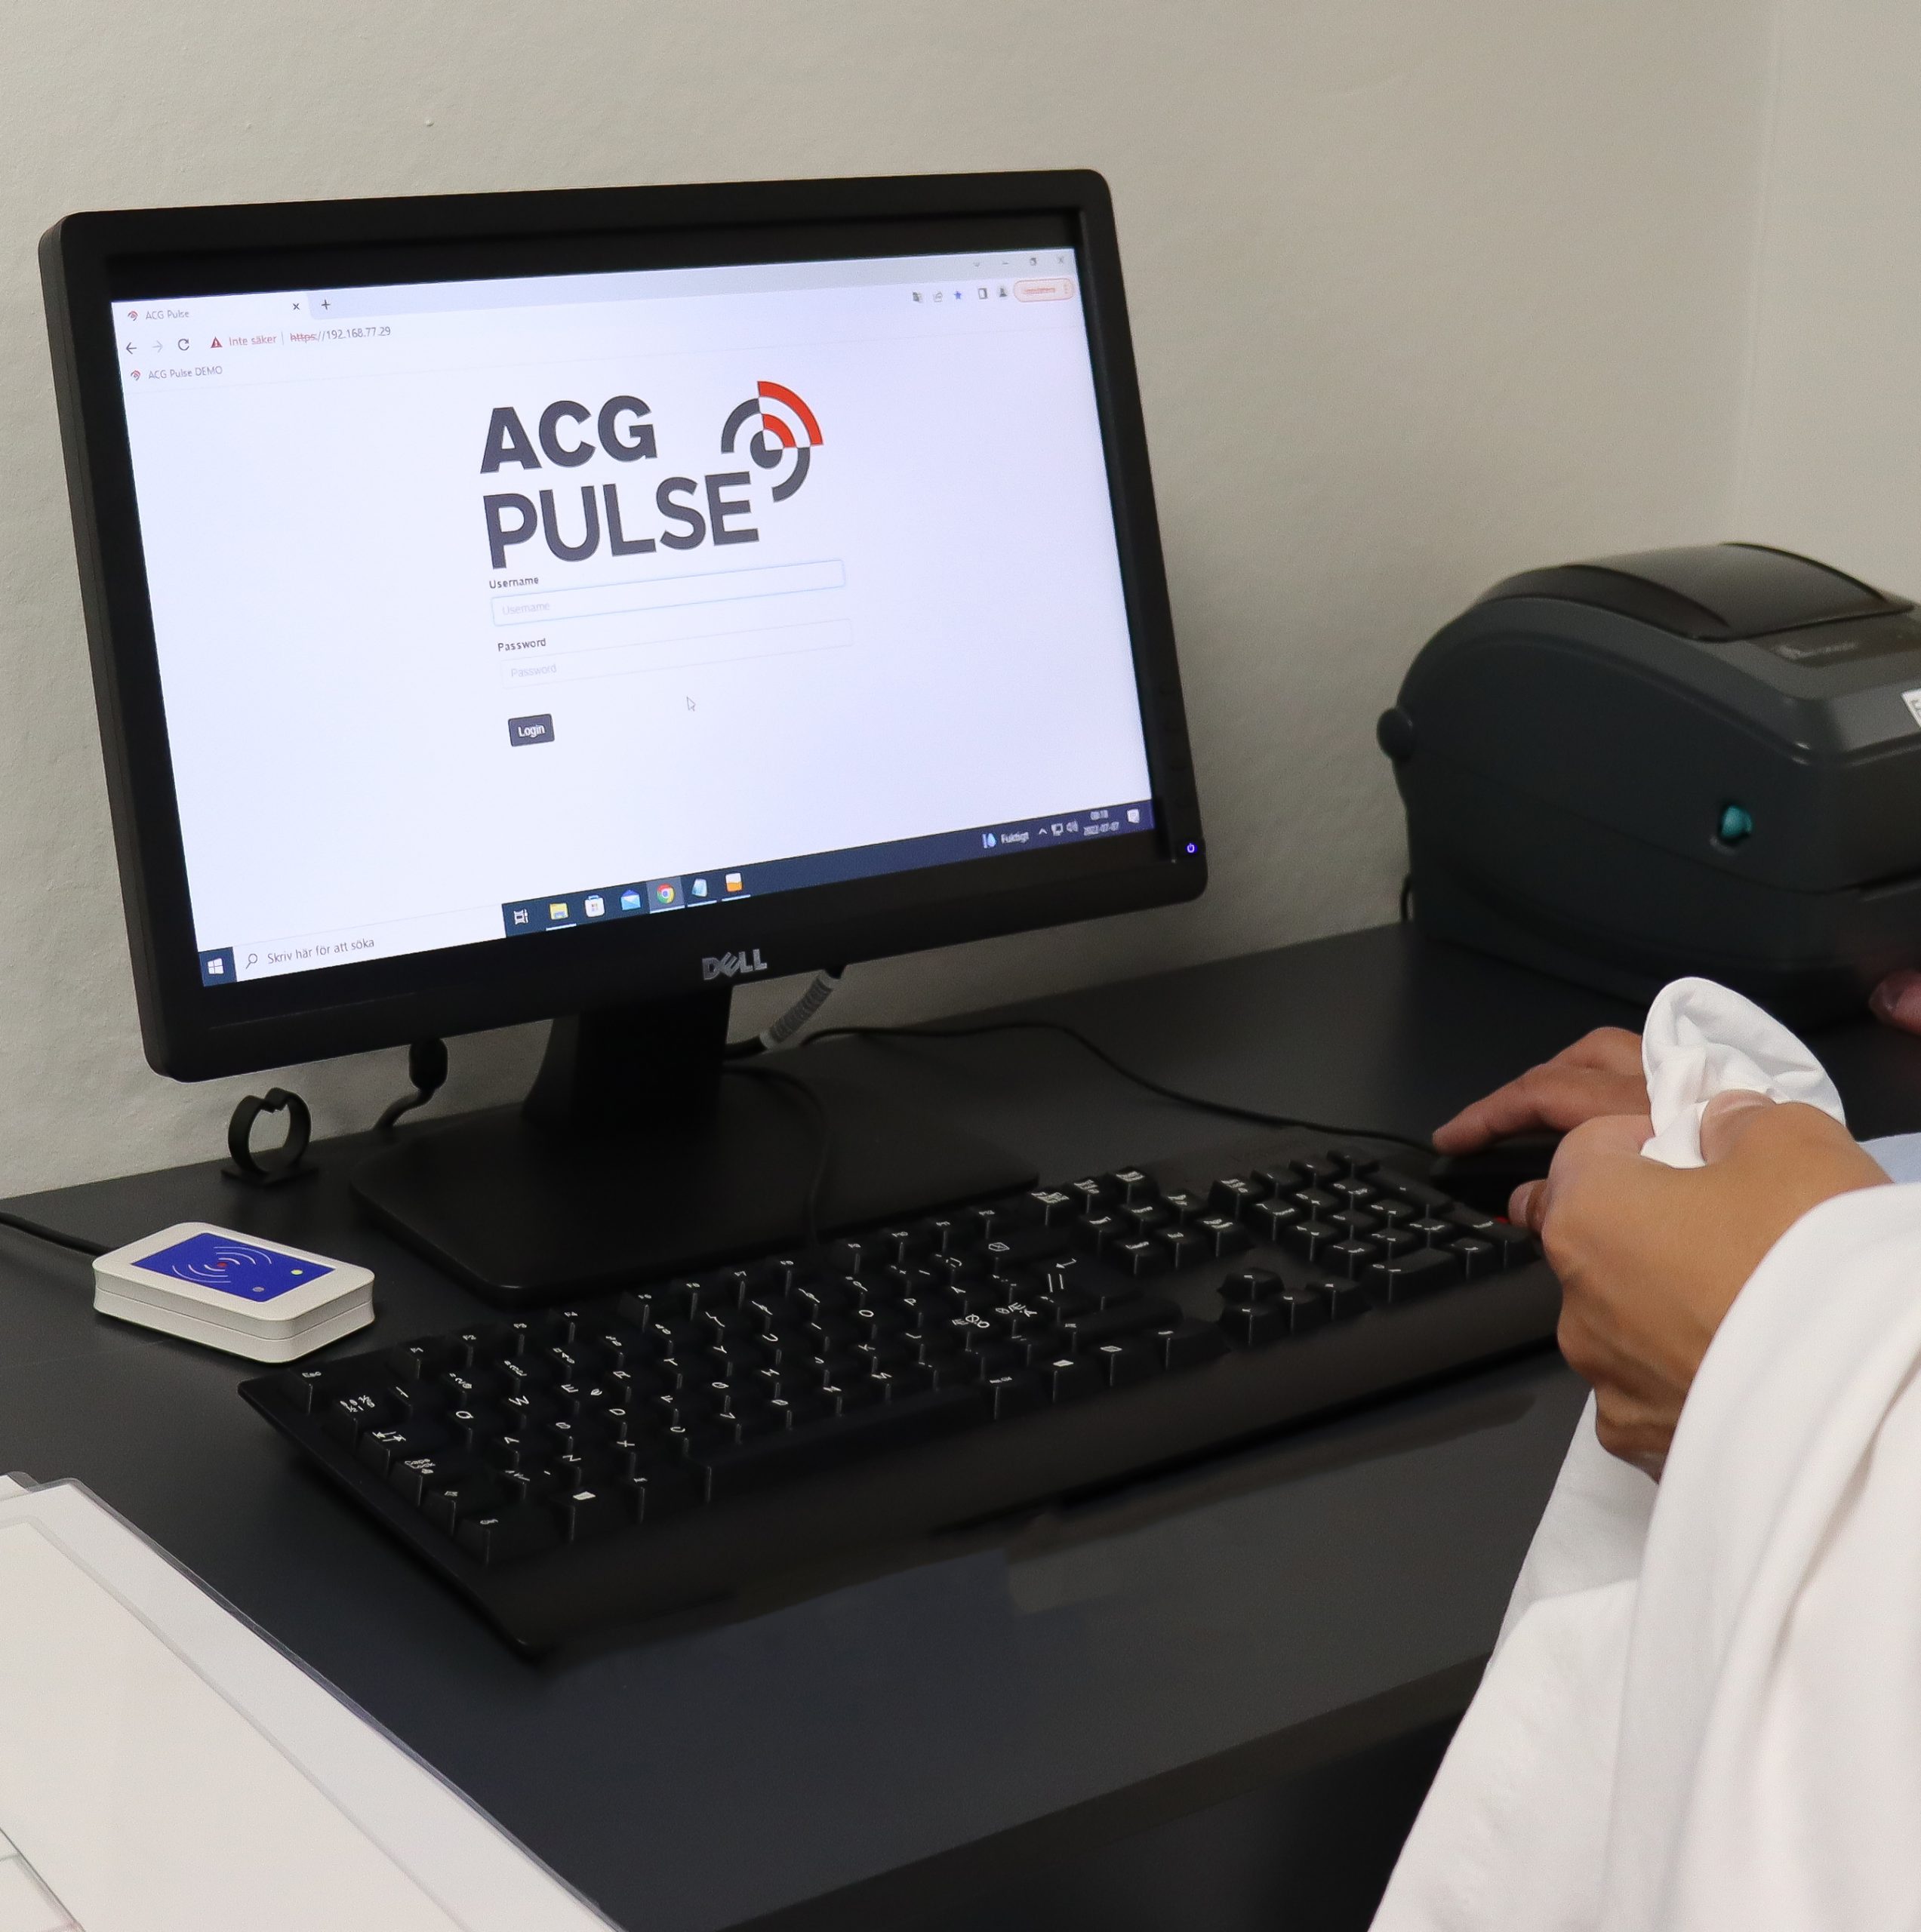 en hand som registrerar en vit t-shirt i en Praktisk registreringsstation för RFID en datorskärm visar information och tangentbord ligger på svart skrivbord